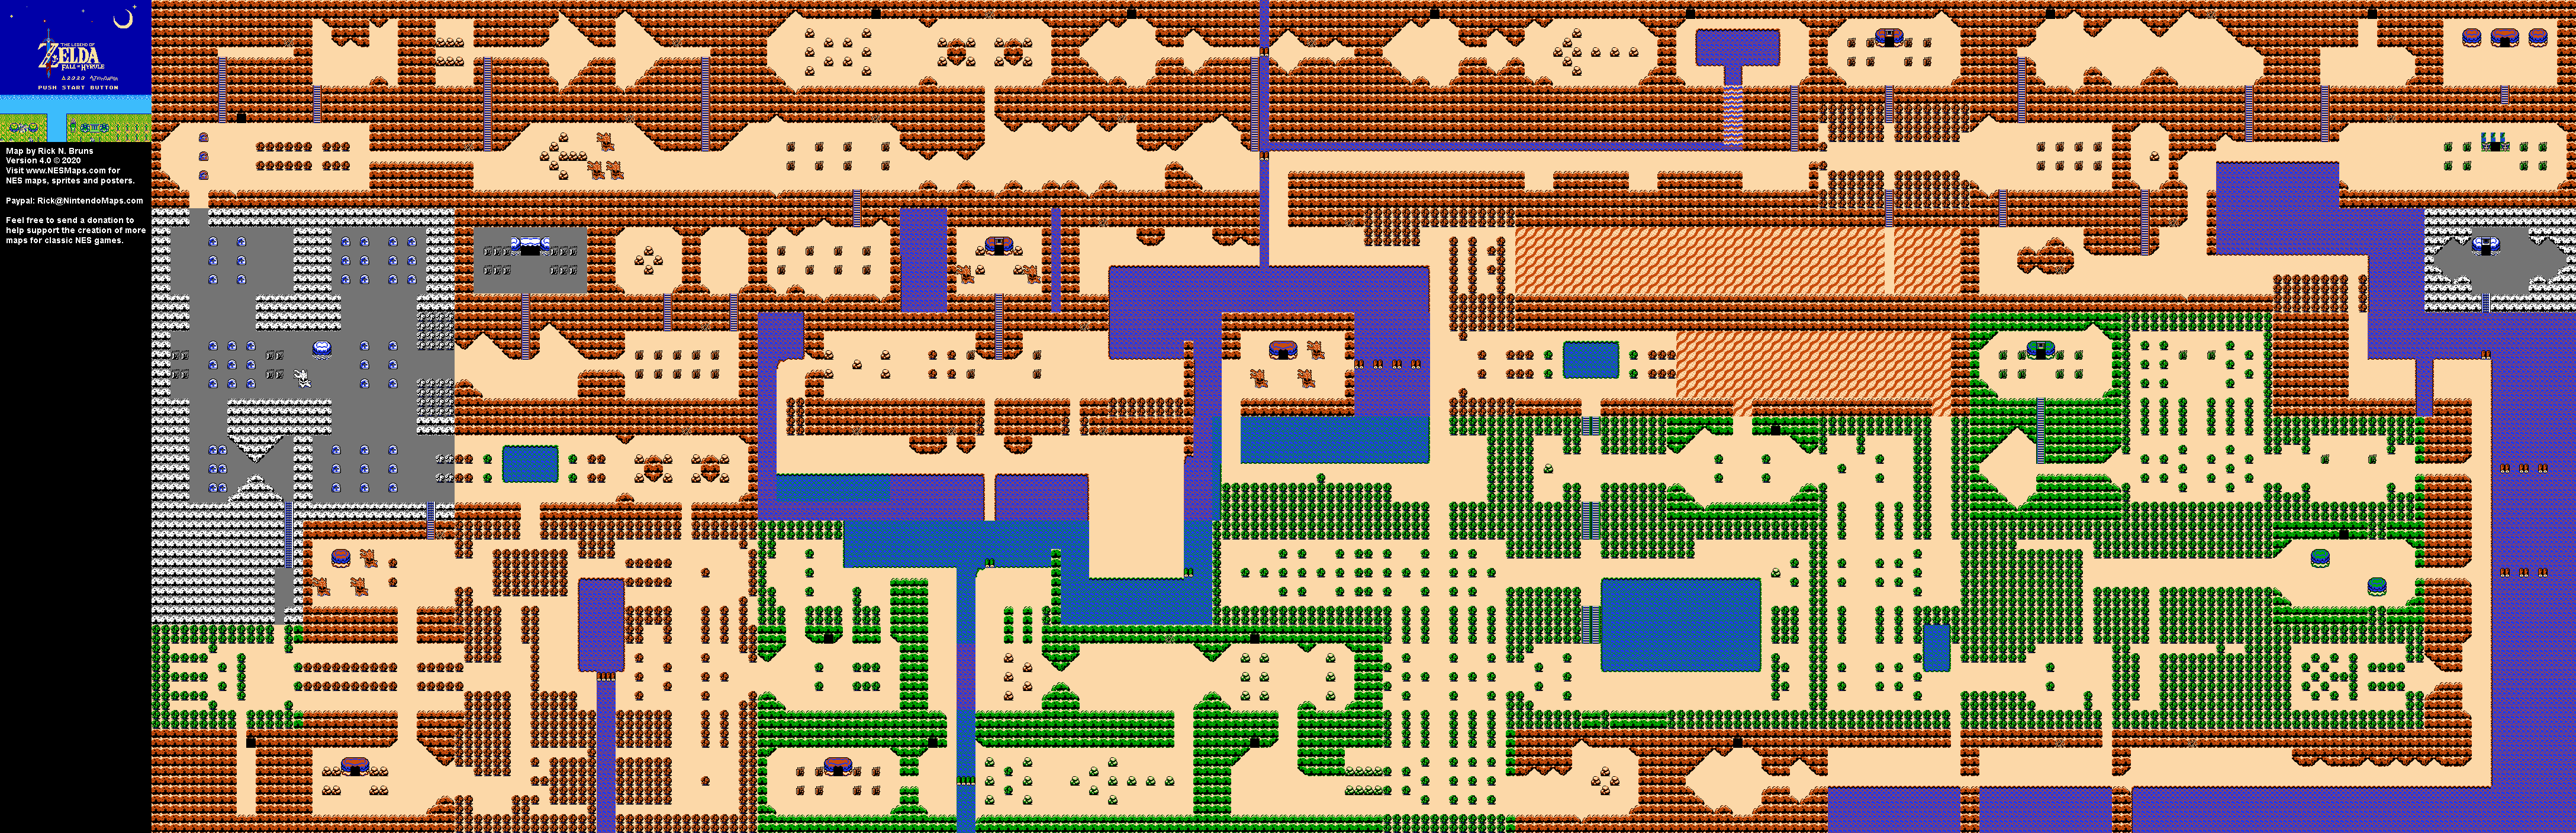 Legend Of Zelda Map